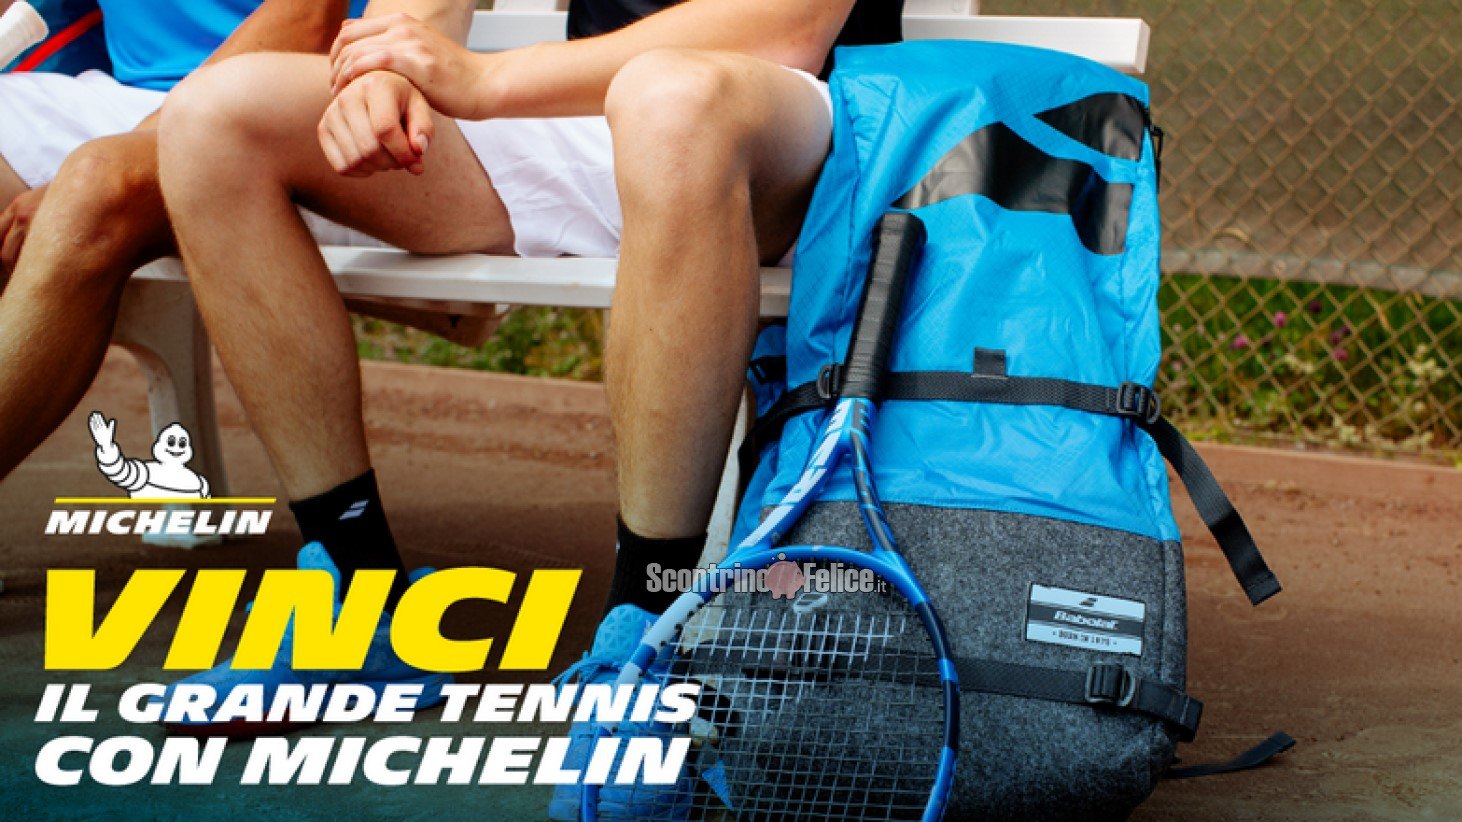 Concorso gratuito "Vinci il grande tennis con Michelin": in palio scarpe e borsoni Babolat, e 1 viaggio a Parigi per assistere al Grande Tennis!